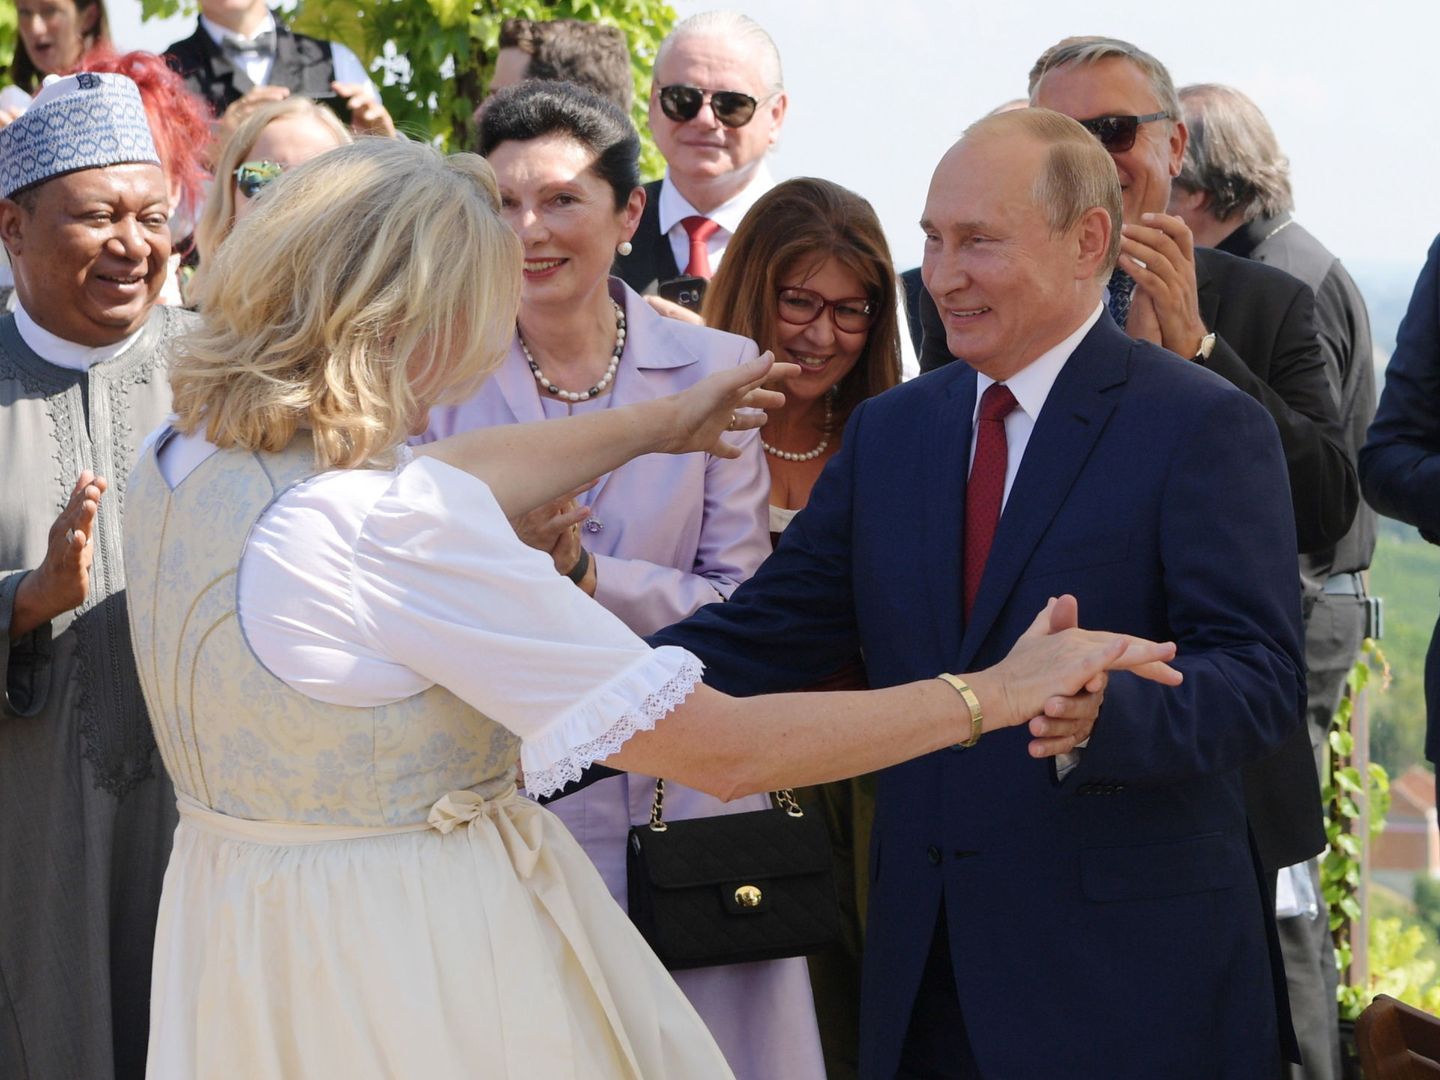 Putin bailando con la ministra de exteriores austriaca durante su boda, una invitación que ha levantado recelos. (Reuters)